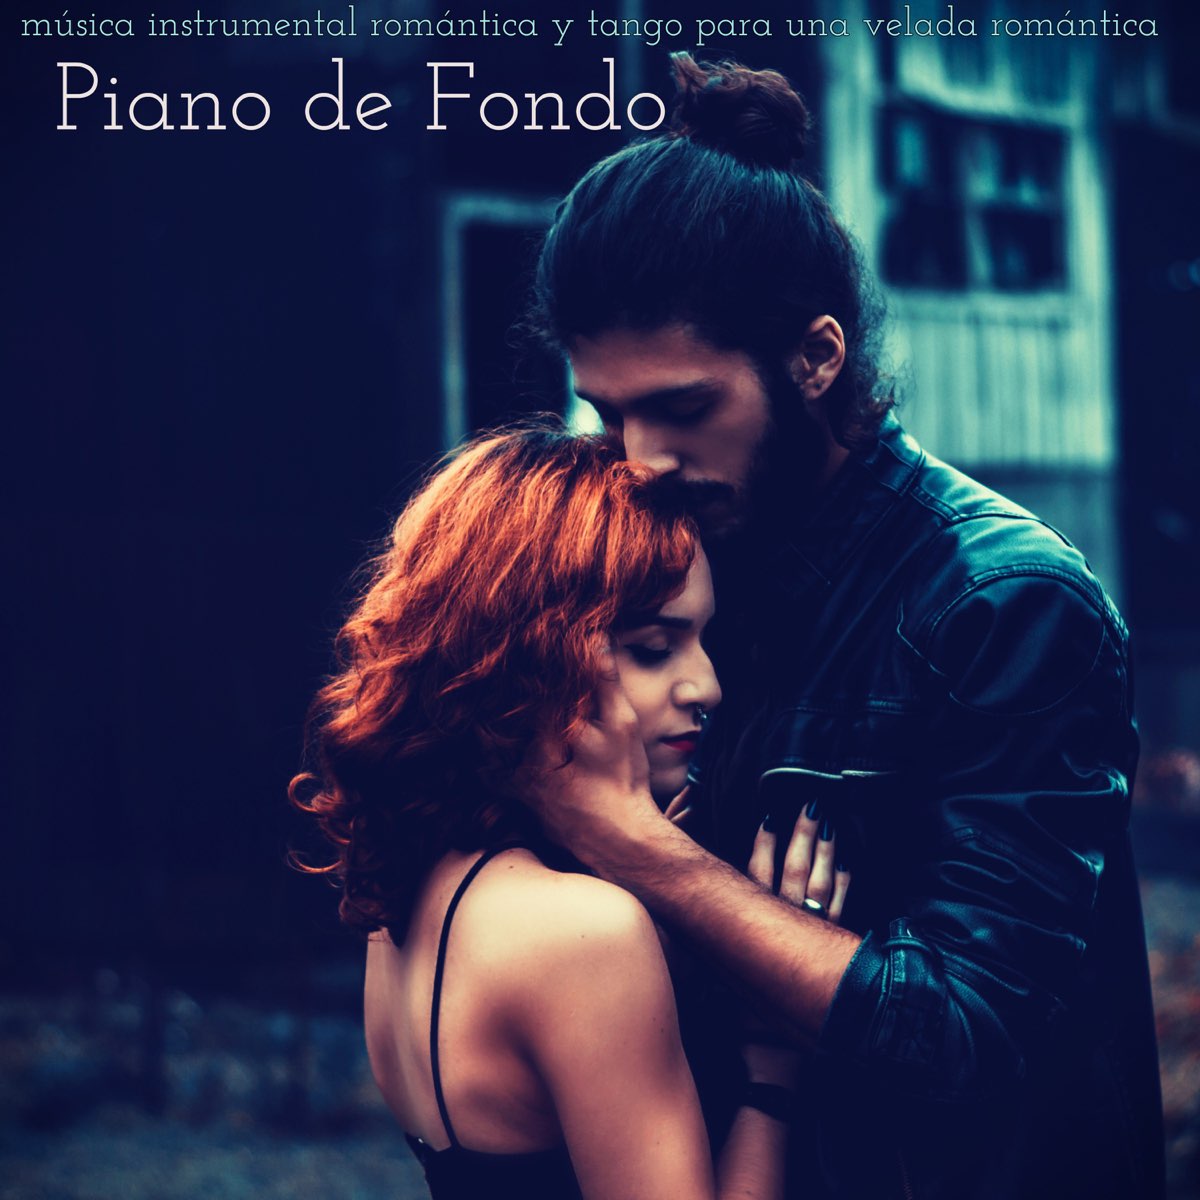 Piano de Fondo - Piano, Música Instrumental Romántica y Tango para una  Velada Romántica by El Piano on Apple Music